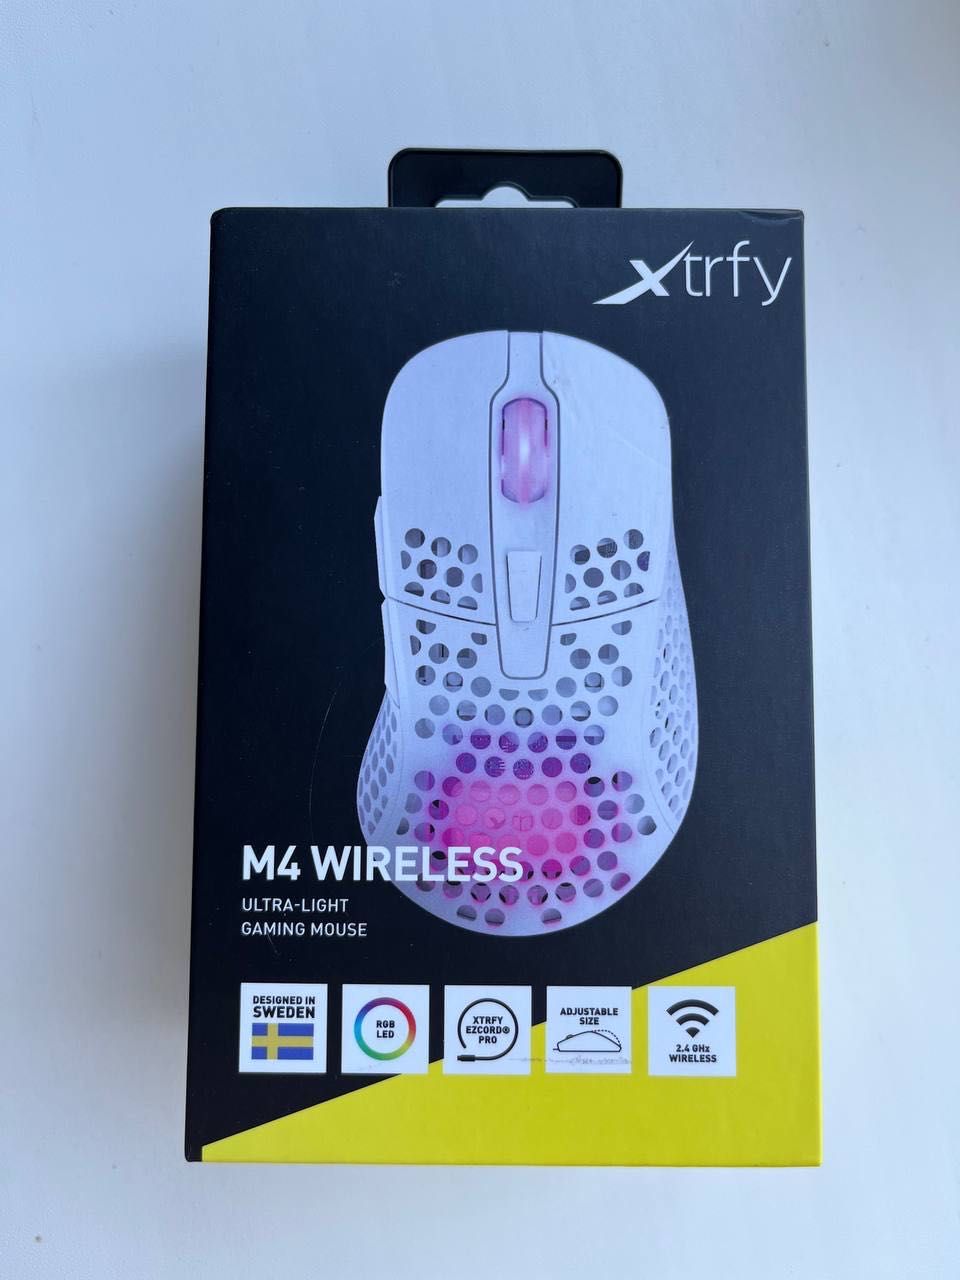 Xtrfy M4 wireless